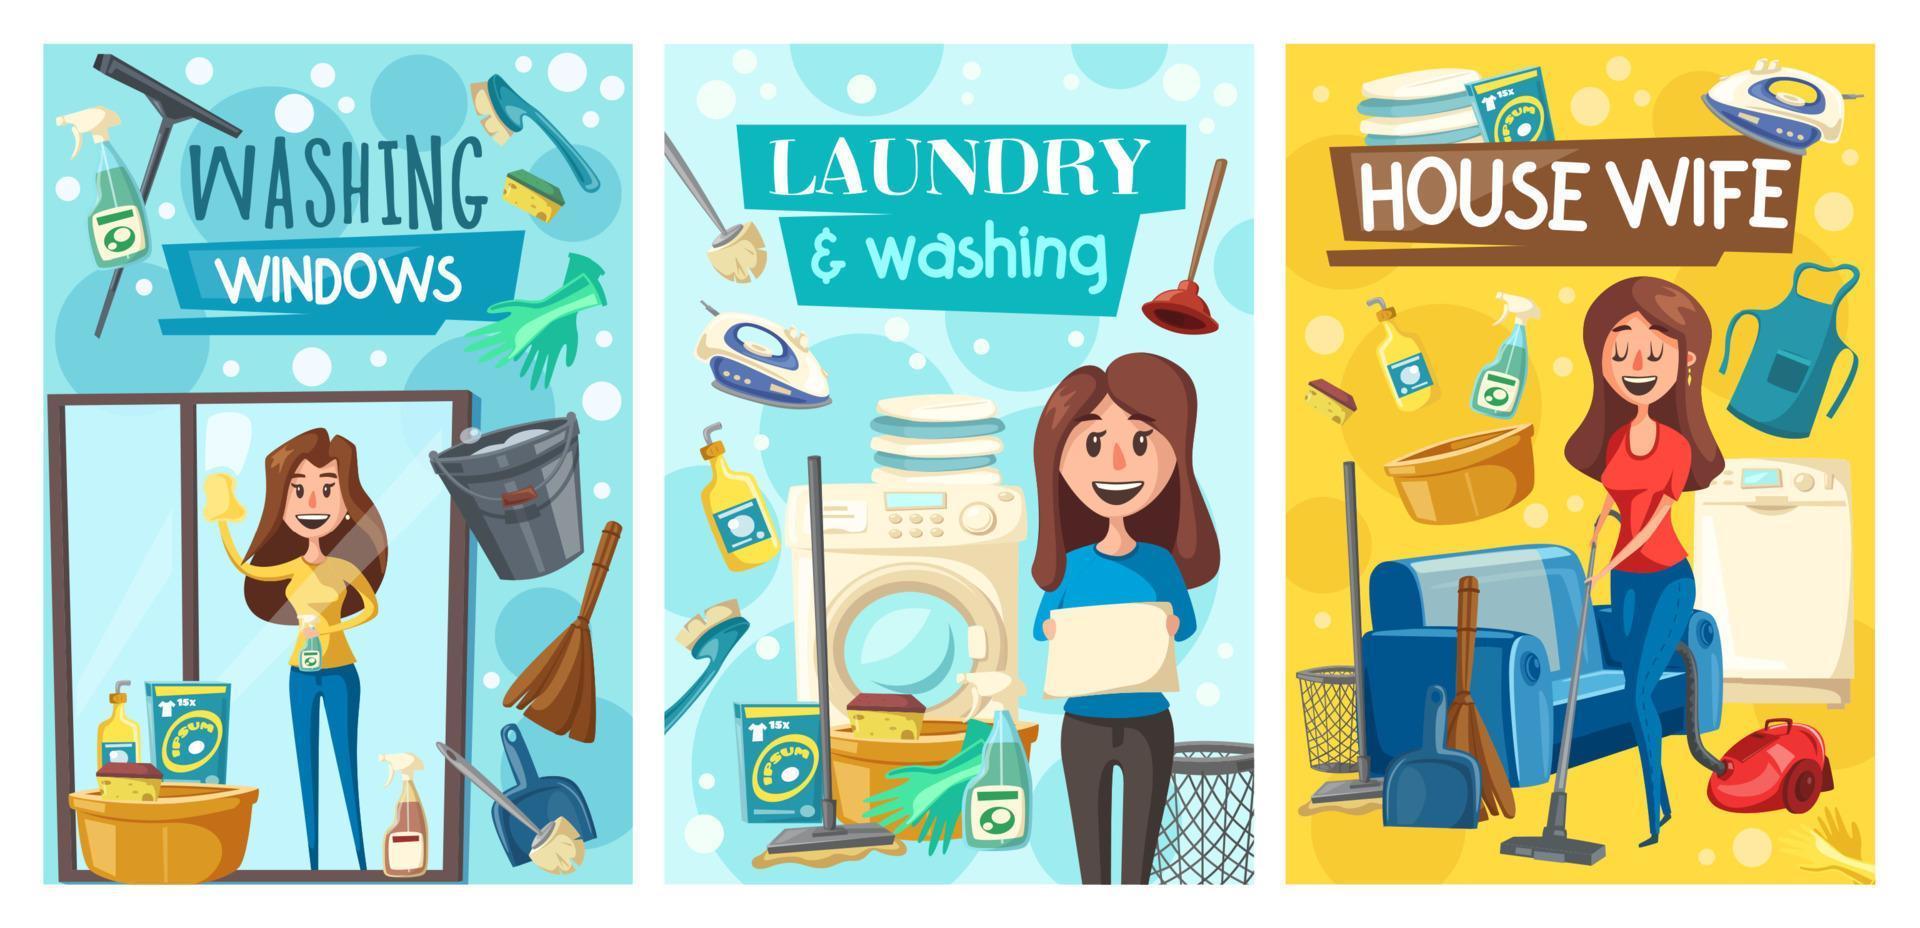 service de nettoyage à domicile, blanchisserie et lavage de la maison vecteur